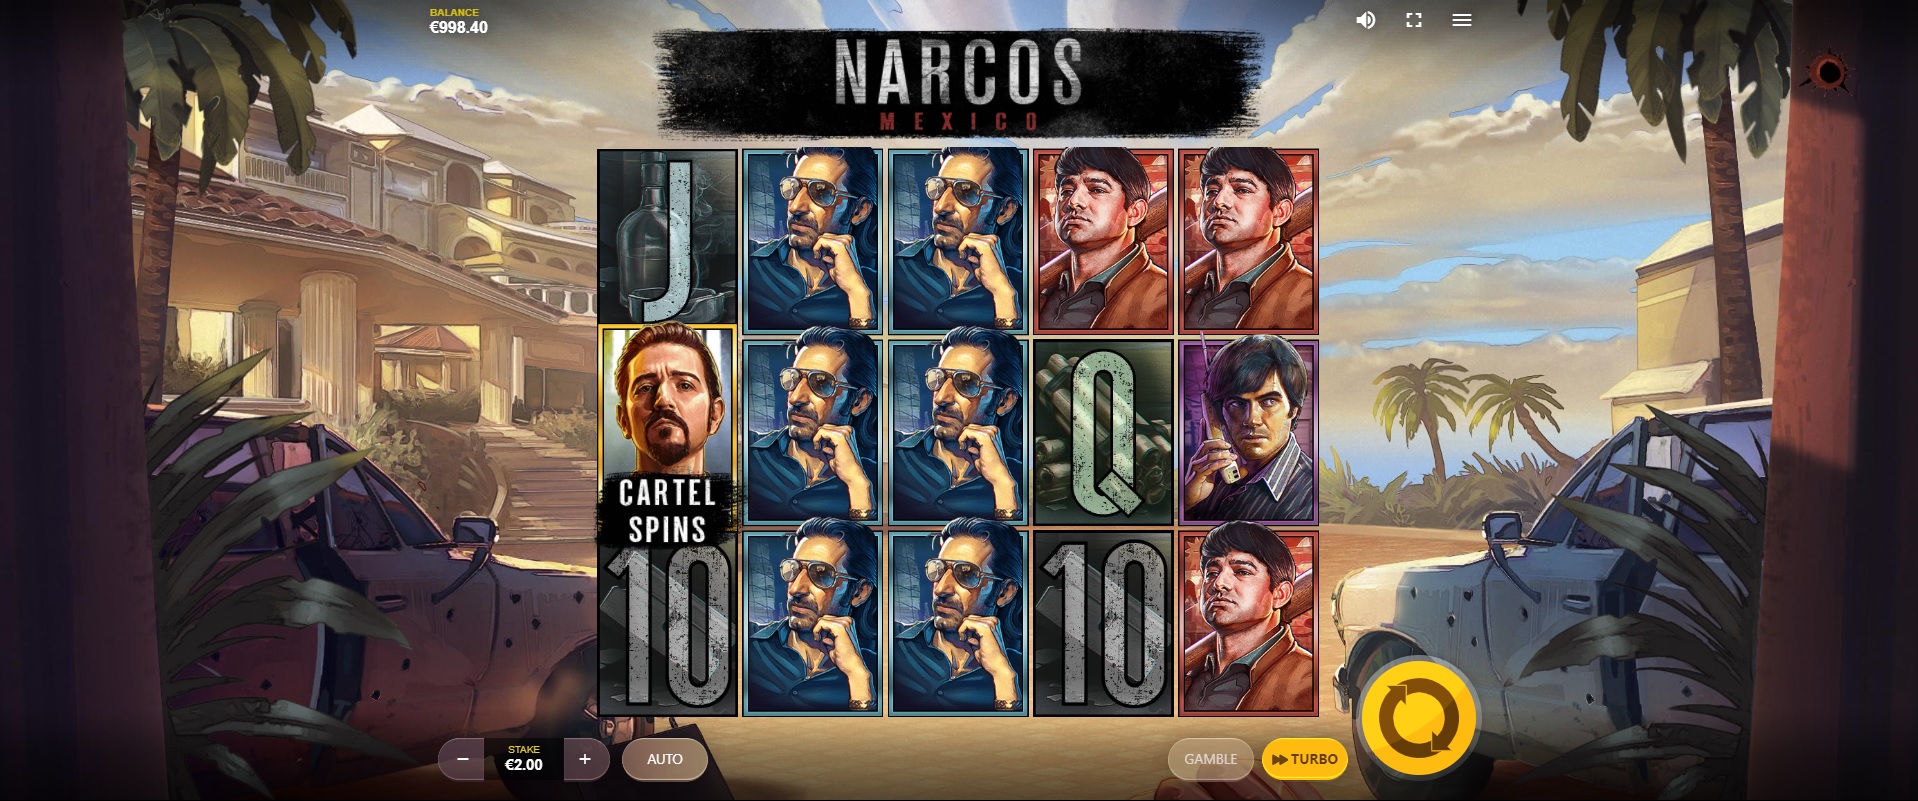 Narcos Mexico, Base game